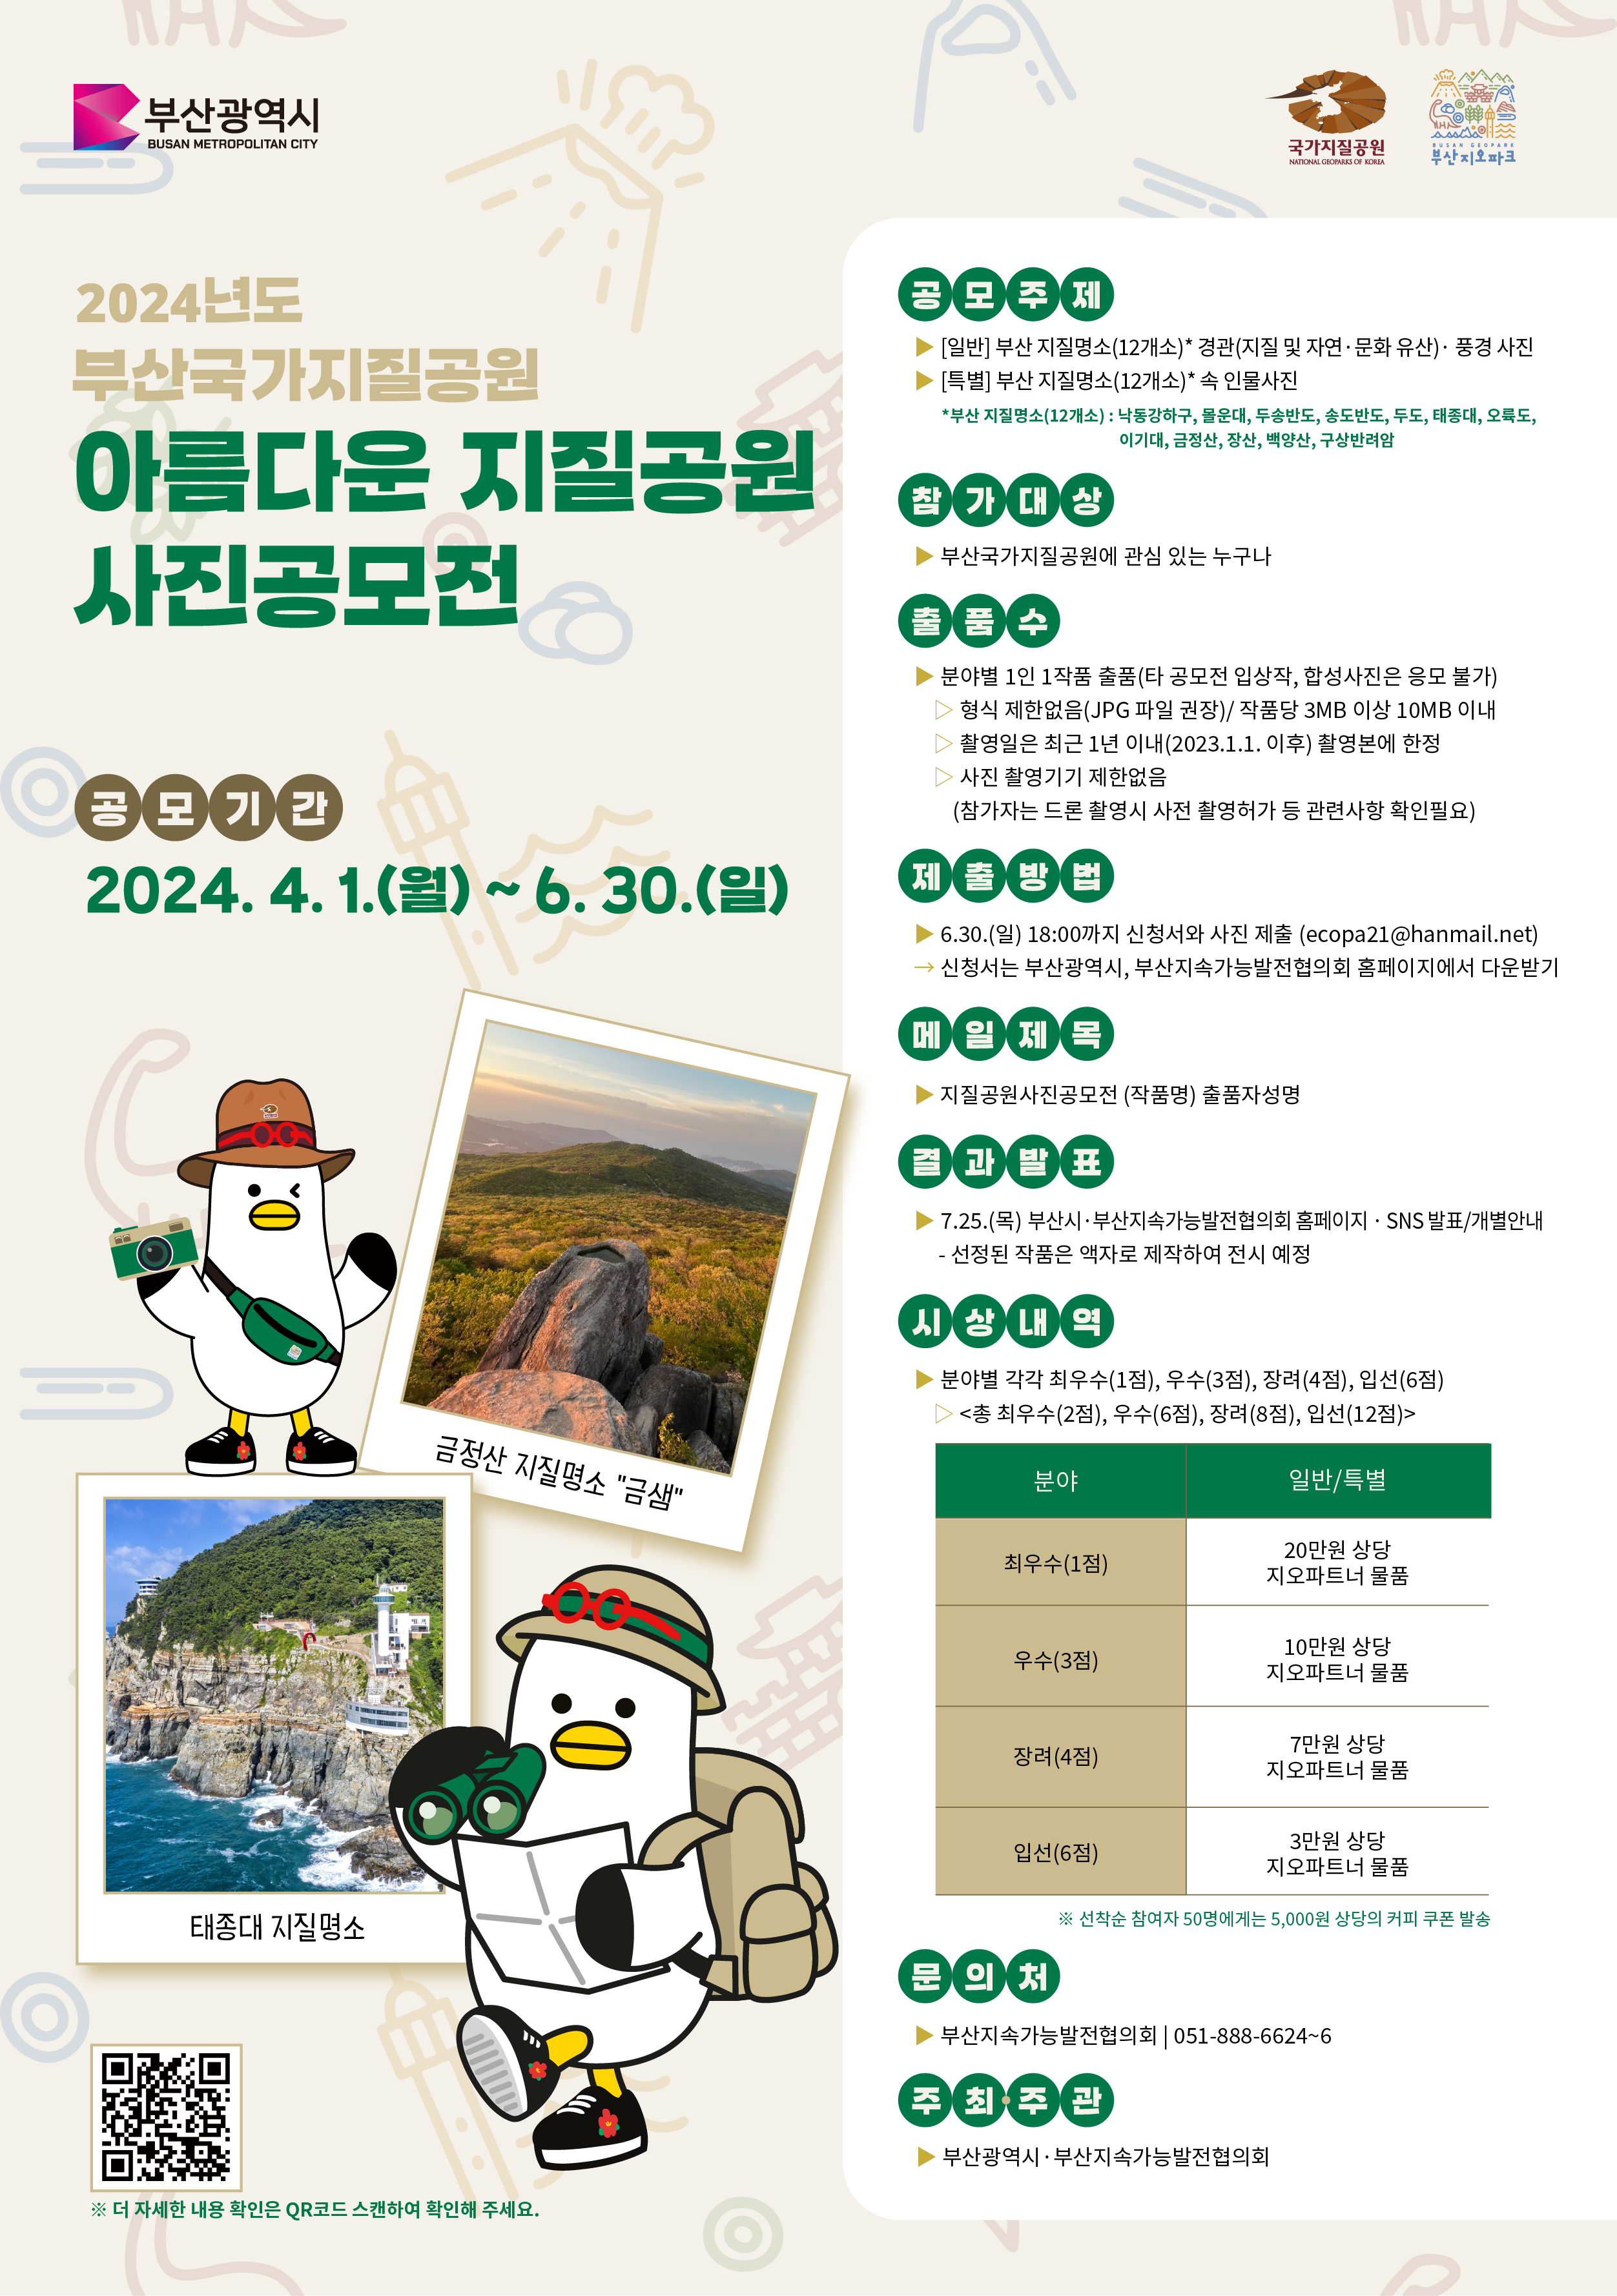 「2024 아름다운 부산국가지질공원 사진공모전」 개최 및 참여 안내